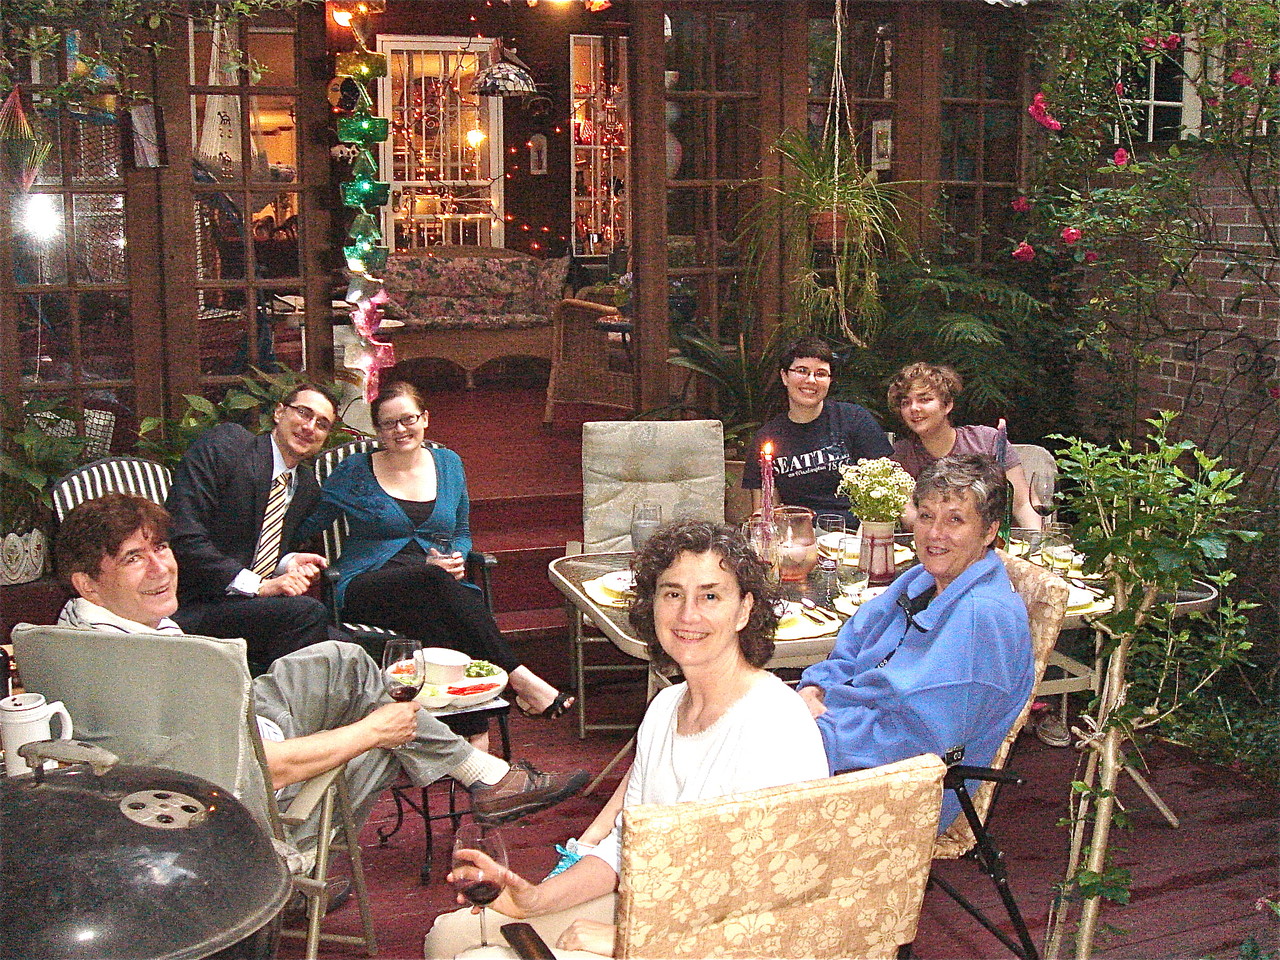 John, Nate, Jenny Friedman, Emily & Kathleen, Ann & Cindy in front, 6-14-2013